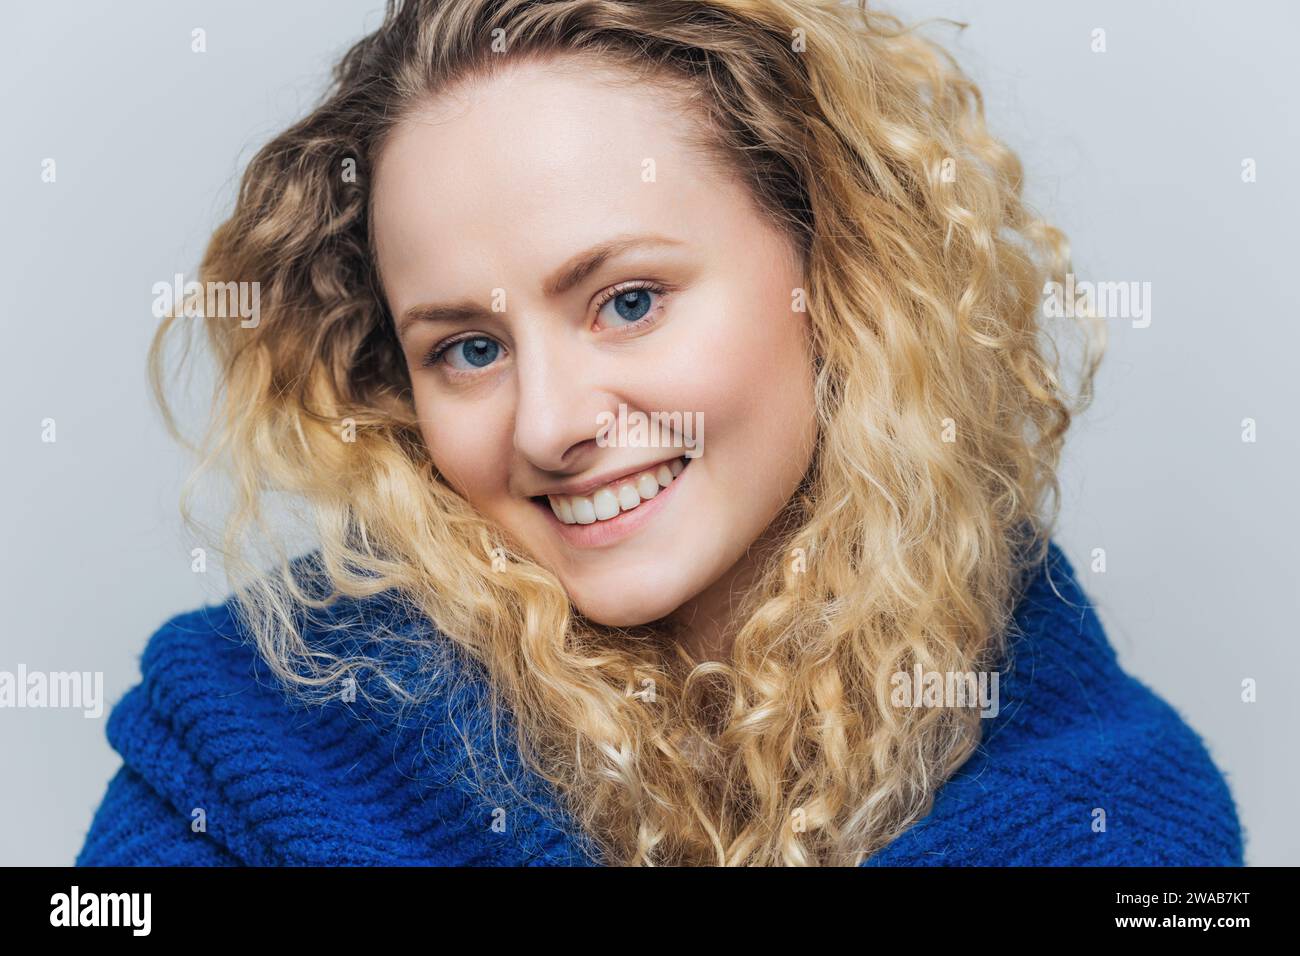 Fröhliche junge Frau mit leuchtend lockigen blonden Haaren, strahlendem Lächeln und einem kuscheligen blauen Strickpullover. Stockfoto